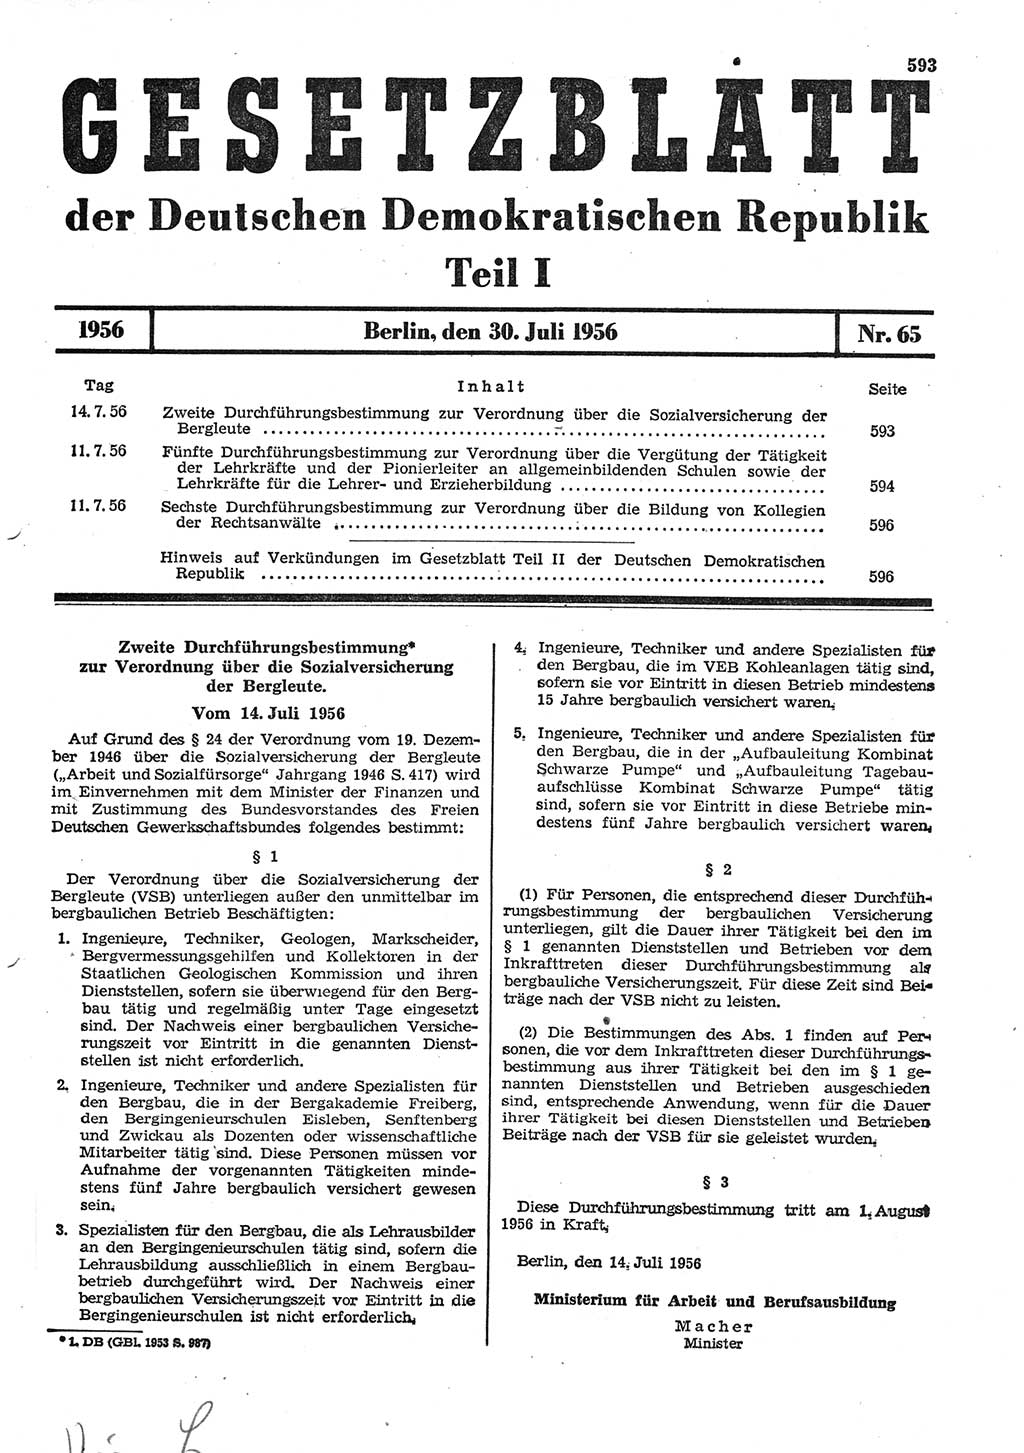 Gesetzblatt (GBl.) der Deutschen Demokratischen Republik (DDR) Teil Ⅰ 1956, Seite 593 (GBl. DDR Ⅰ 1956, S. 593)